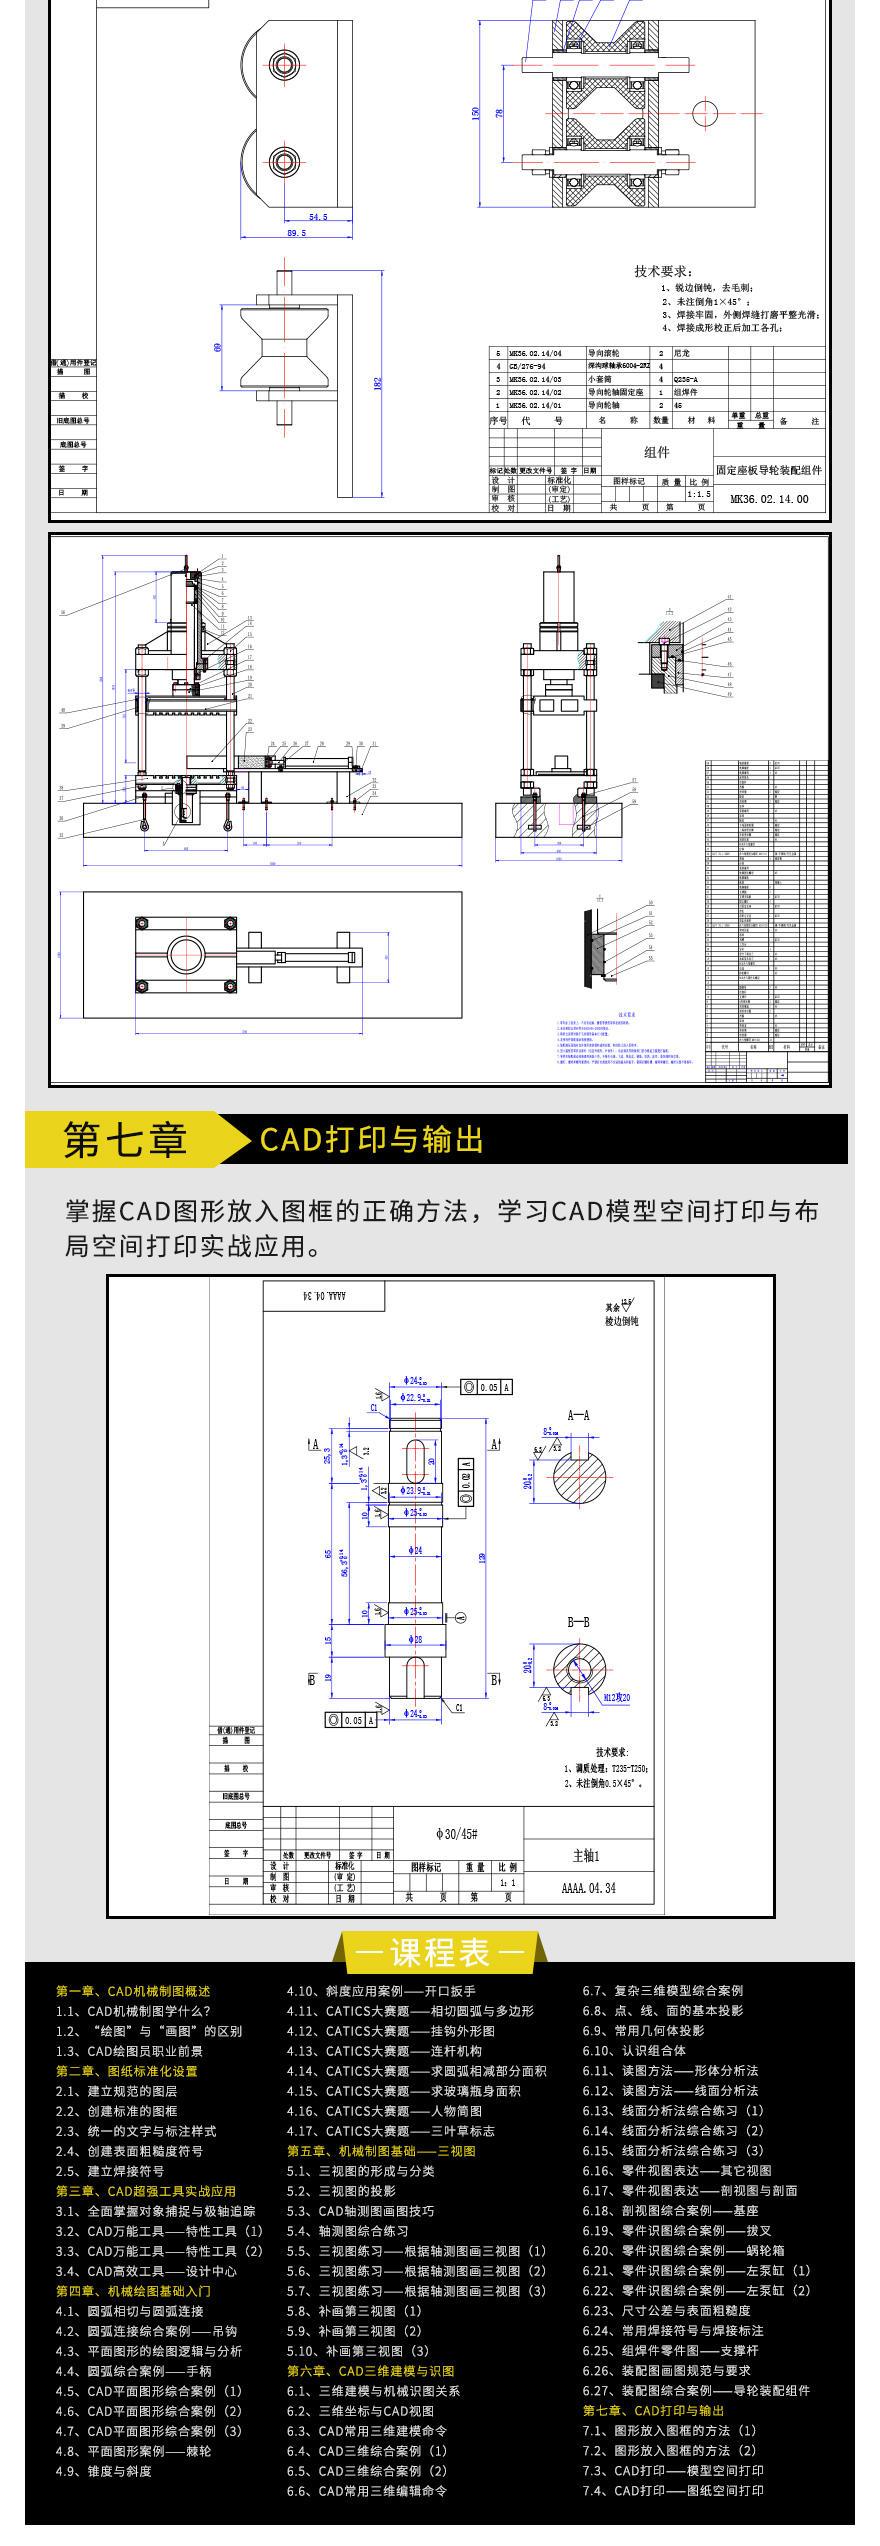 CAD机械制图高级课程-切片2_05.jpg